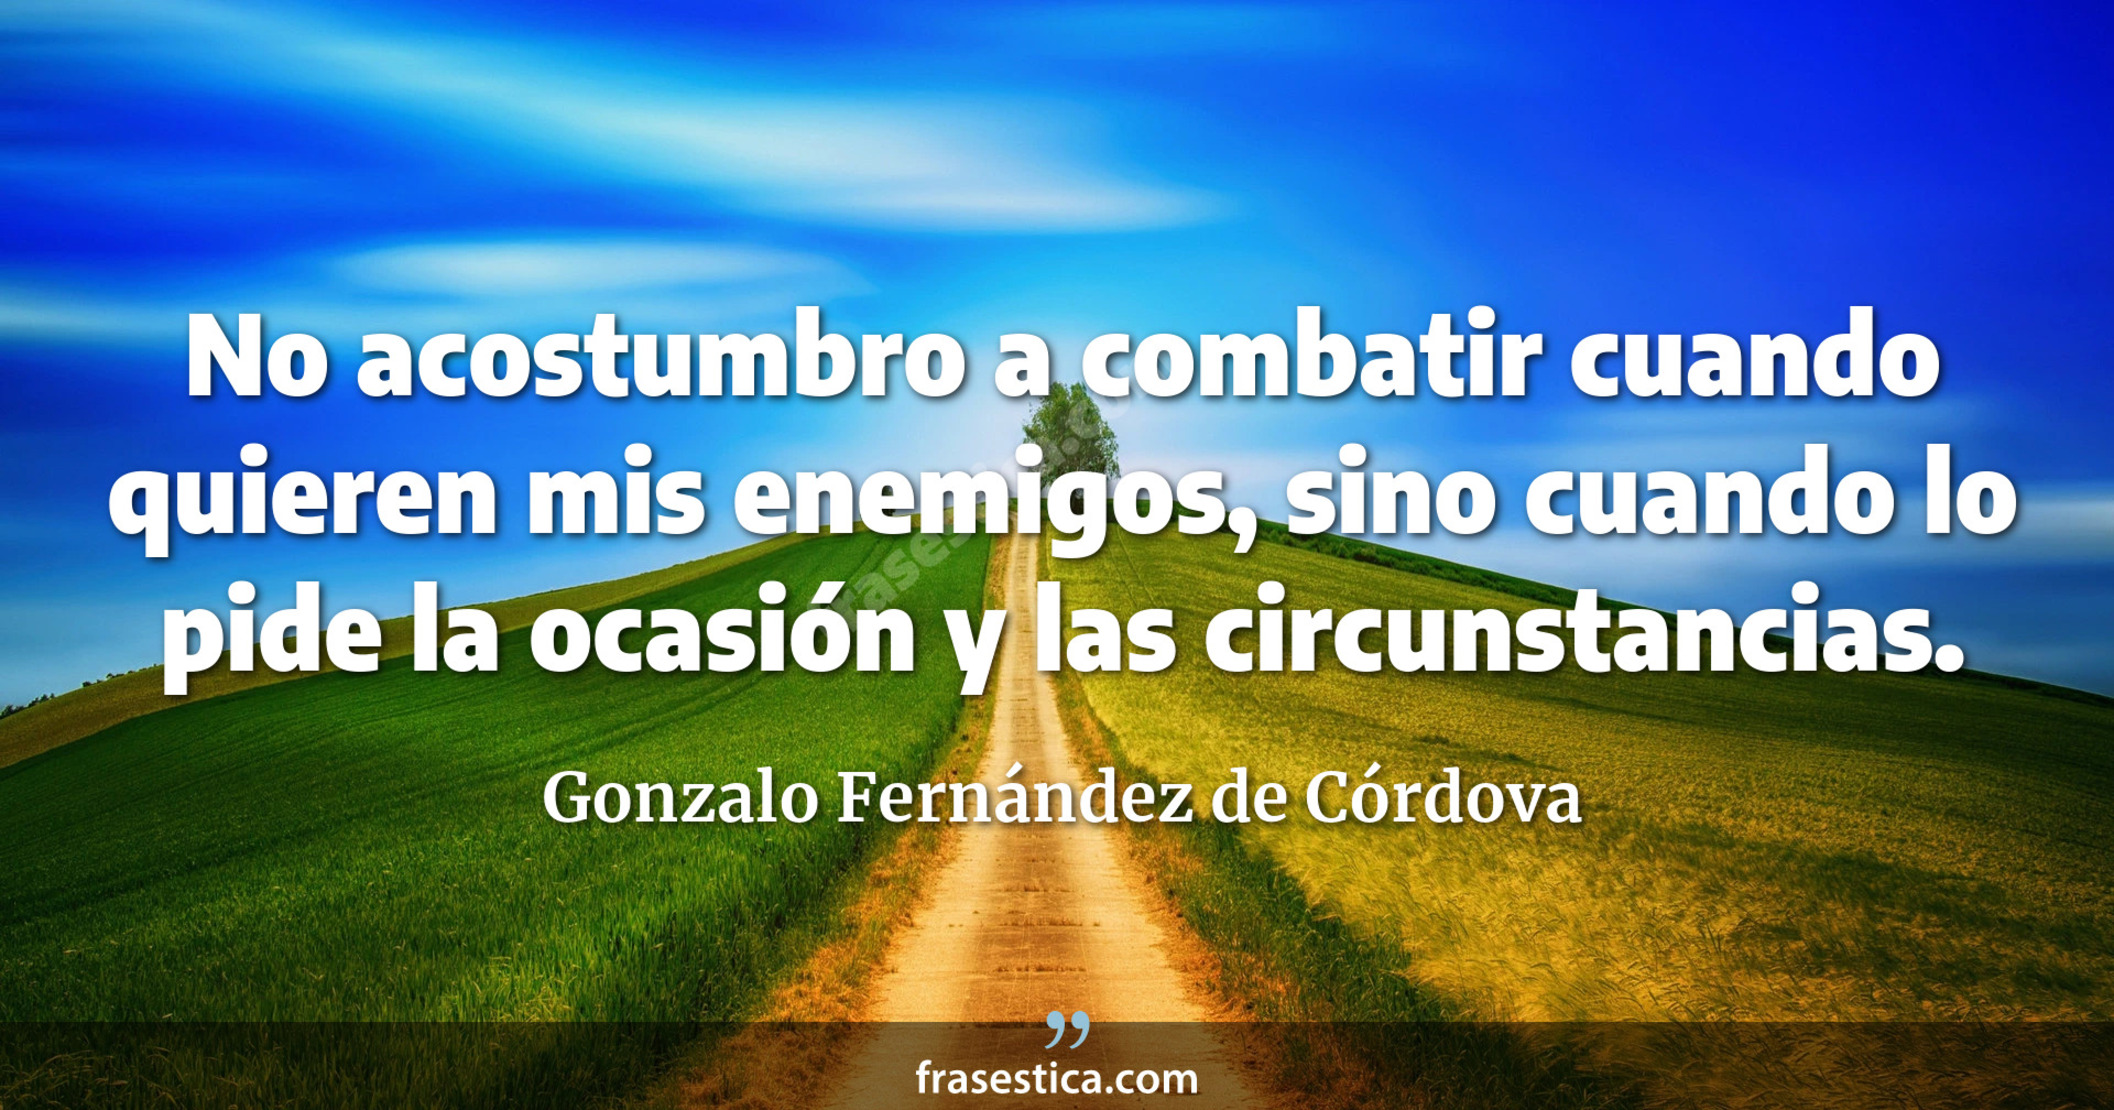 No acostumbro a combatir cuando quieren mis enemigos, sino cuando lo pide la ocasión y las circunstancias. - Gonzalo Fernández de Córdova